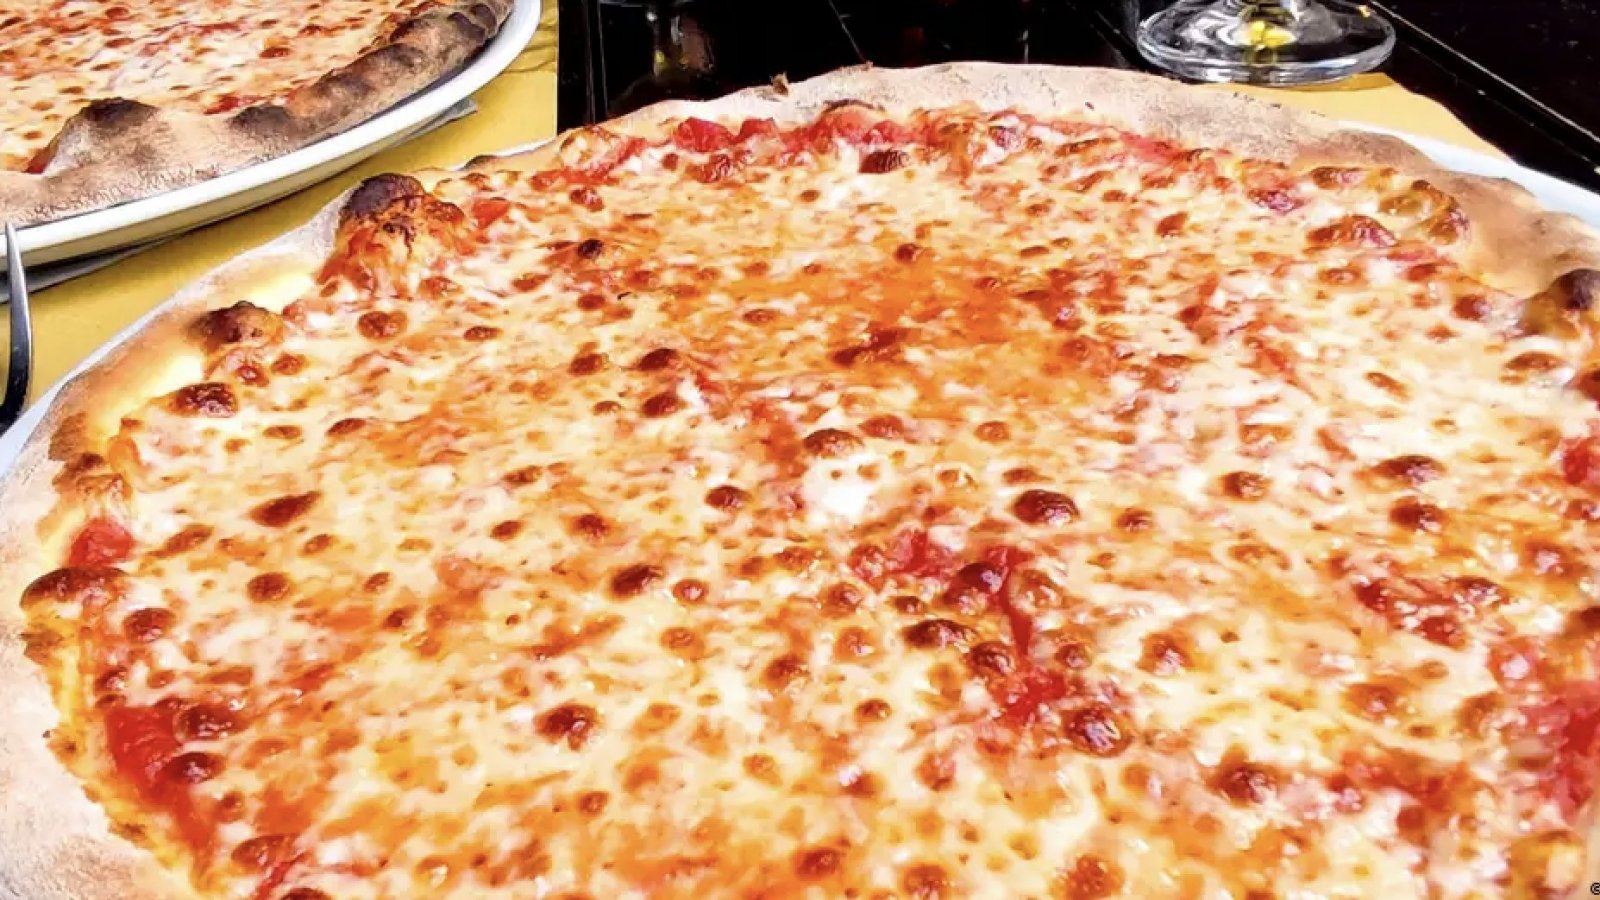 Una pizza recién hecha sobre la mesa, lista para ser disfrutada, combinando ingredientes irresistibles que deleitan los sentidos.